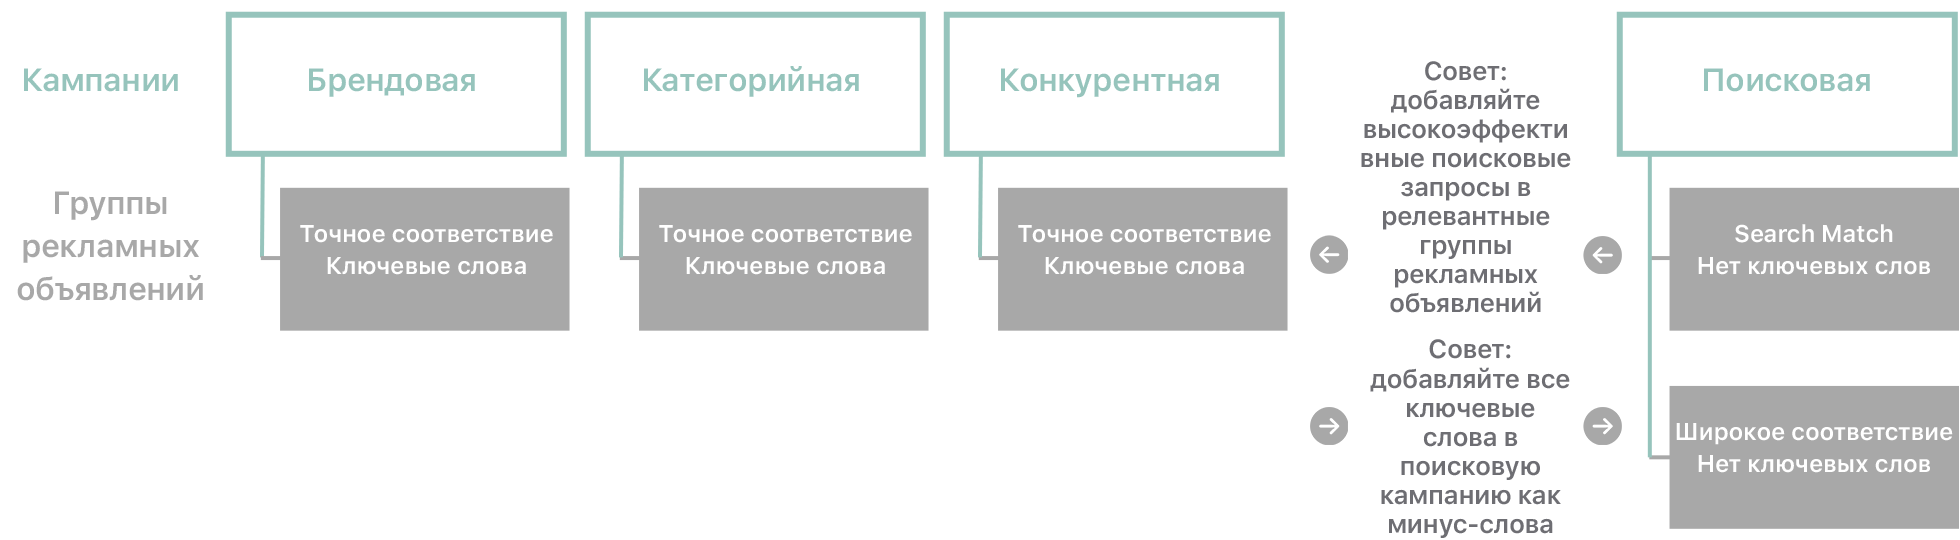 Схема типов кампаний и связанных с ними групп рекламных объявлений, на которой показан следующий контент.